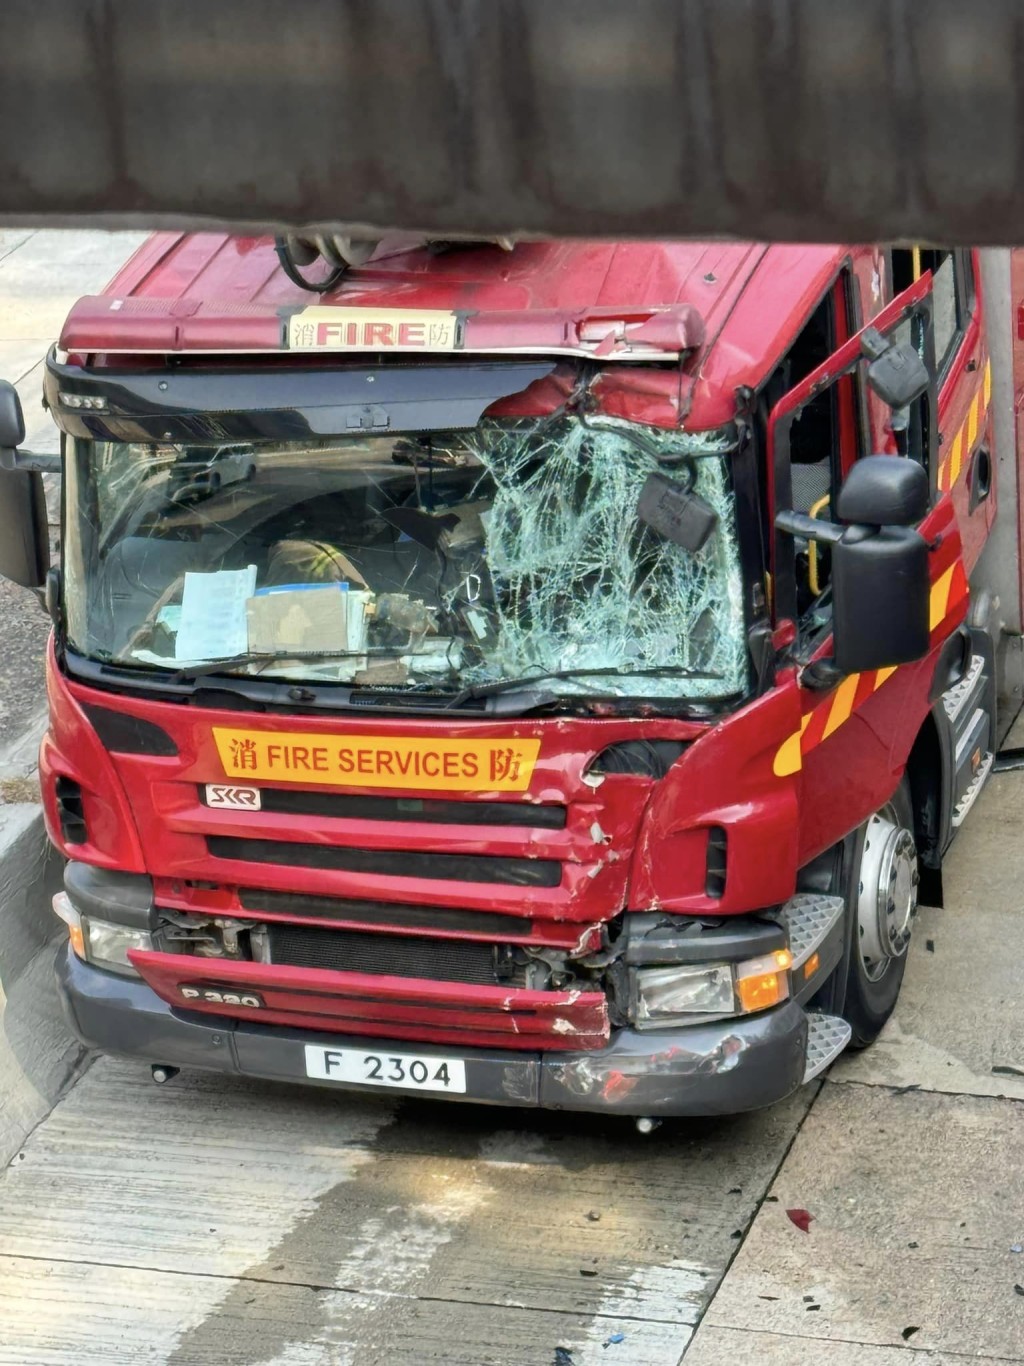 消防车挡风玻璃爆裂。fb：马路的事 (即时交通资讯台)